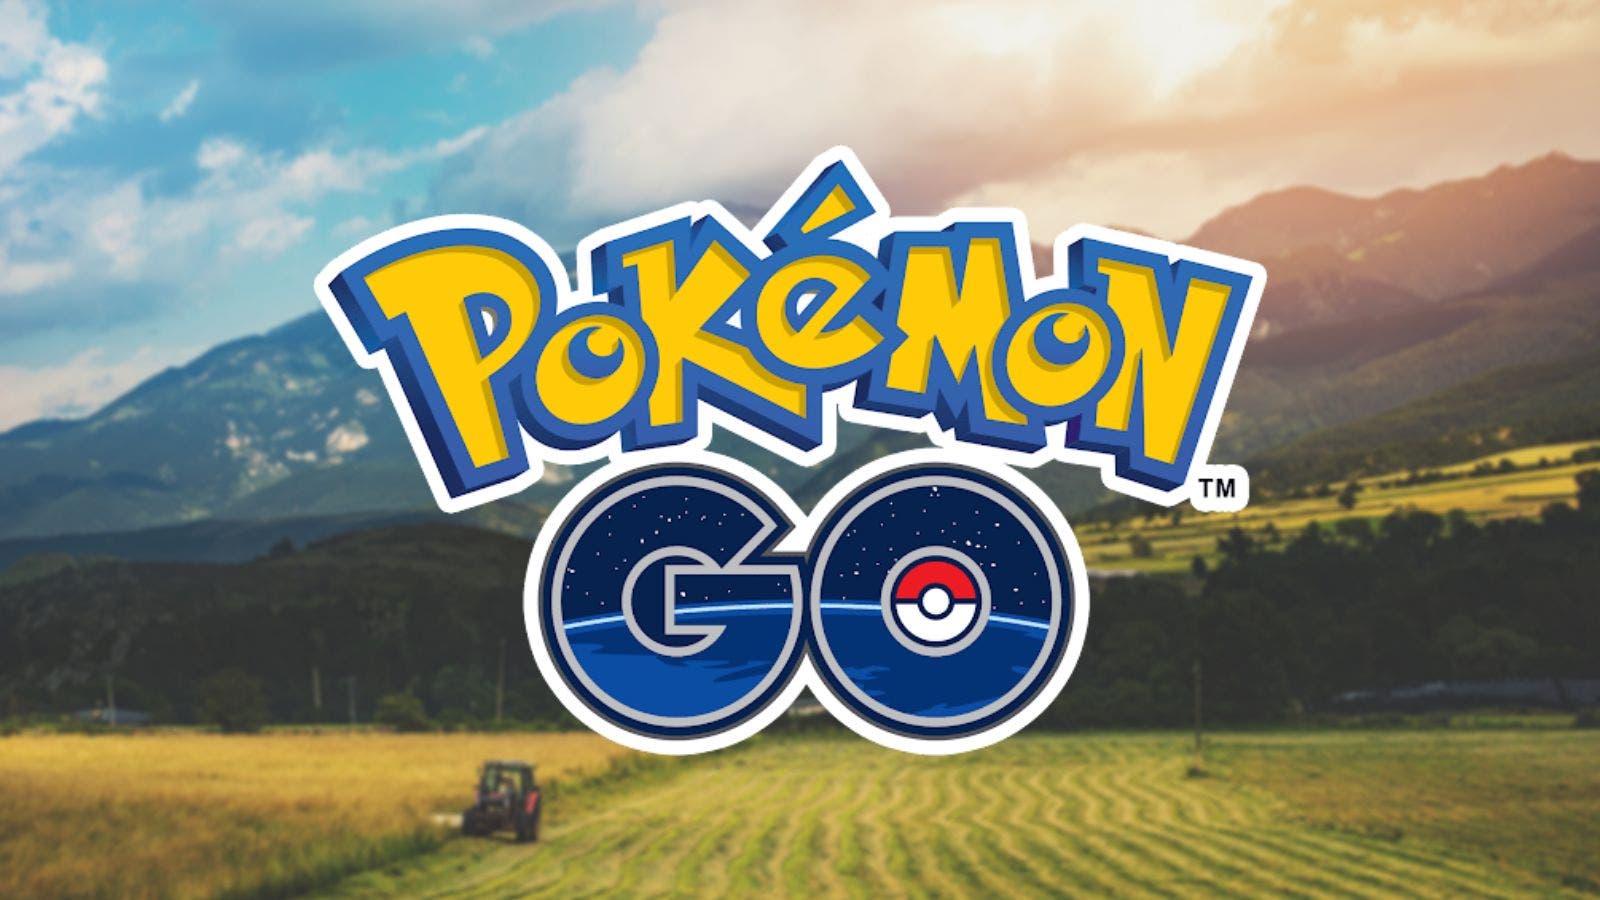 Pokémon GO actualiza su pantalla de carga